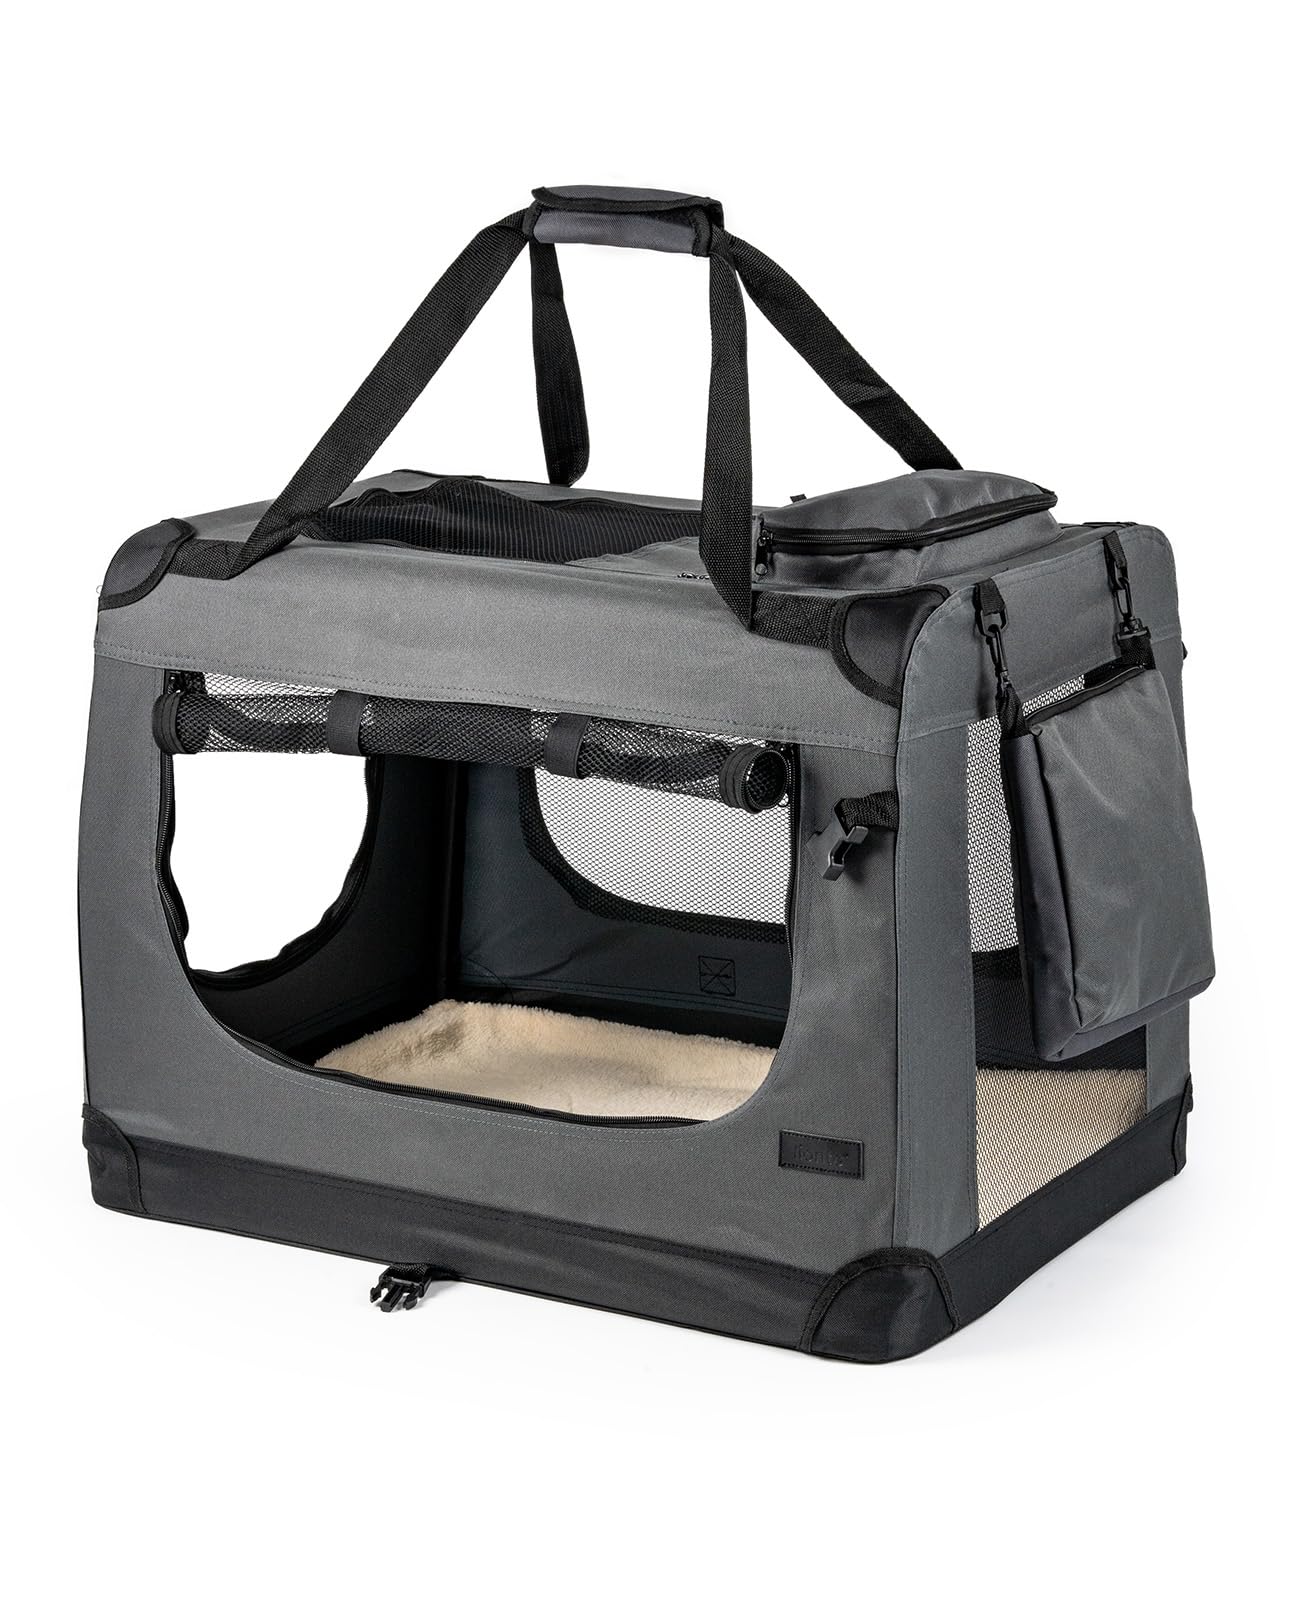 lionto Hundetransportbox faltbar für Reise & Auto, 70x52x50 cm, stabile Transportbox mit Tragegriffen & Decke für Katzen & Hunde bis 15 kg, robuste Hundebox aus Stoff für klein & groß, grau